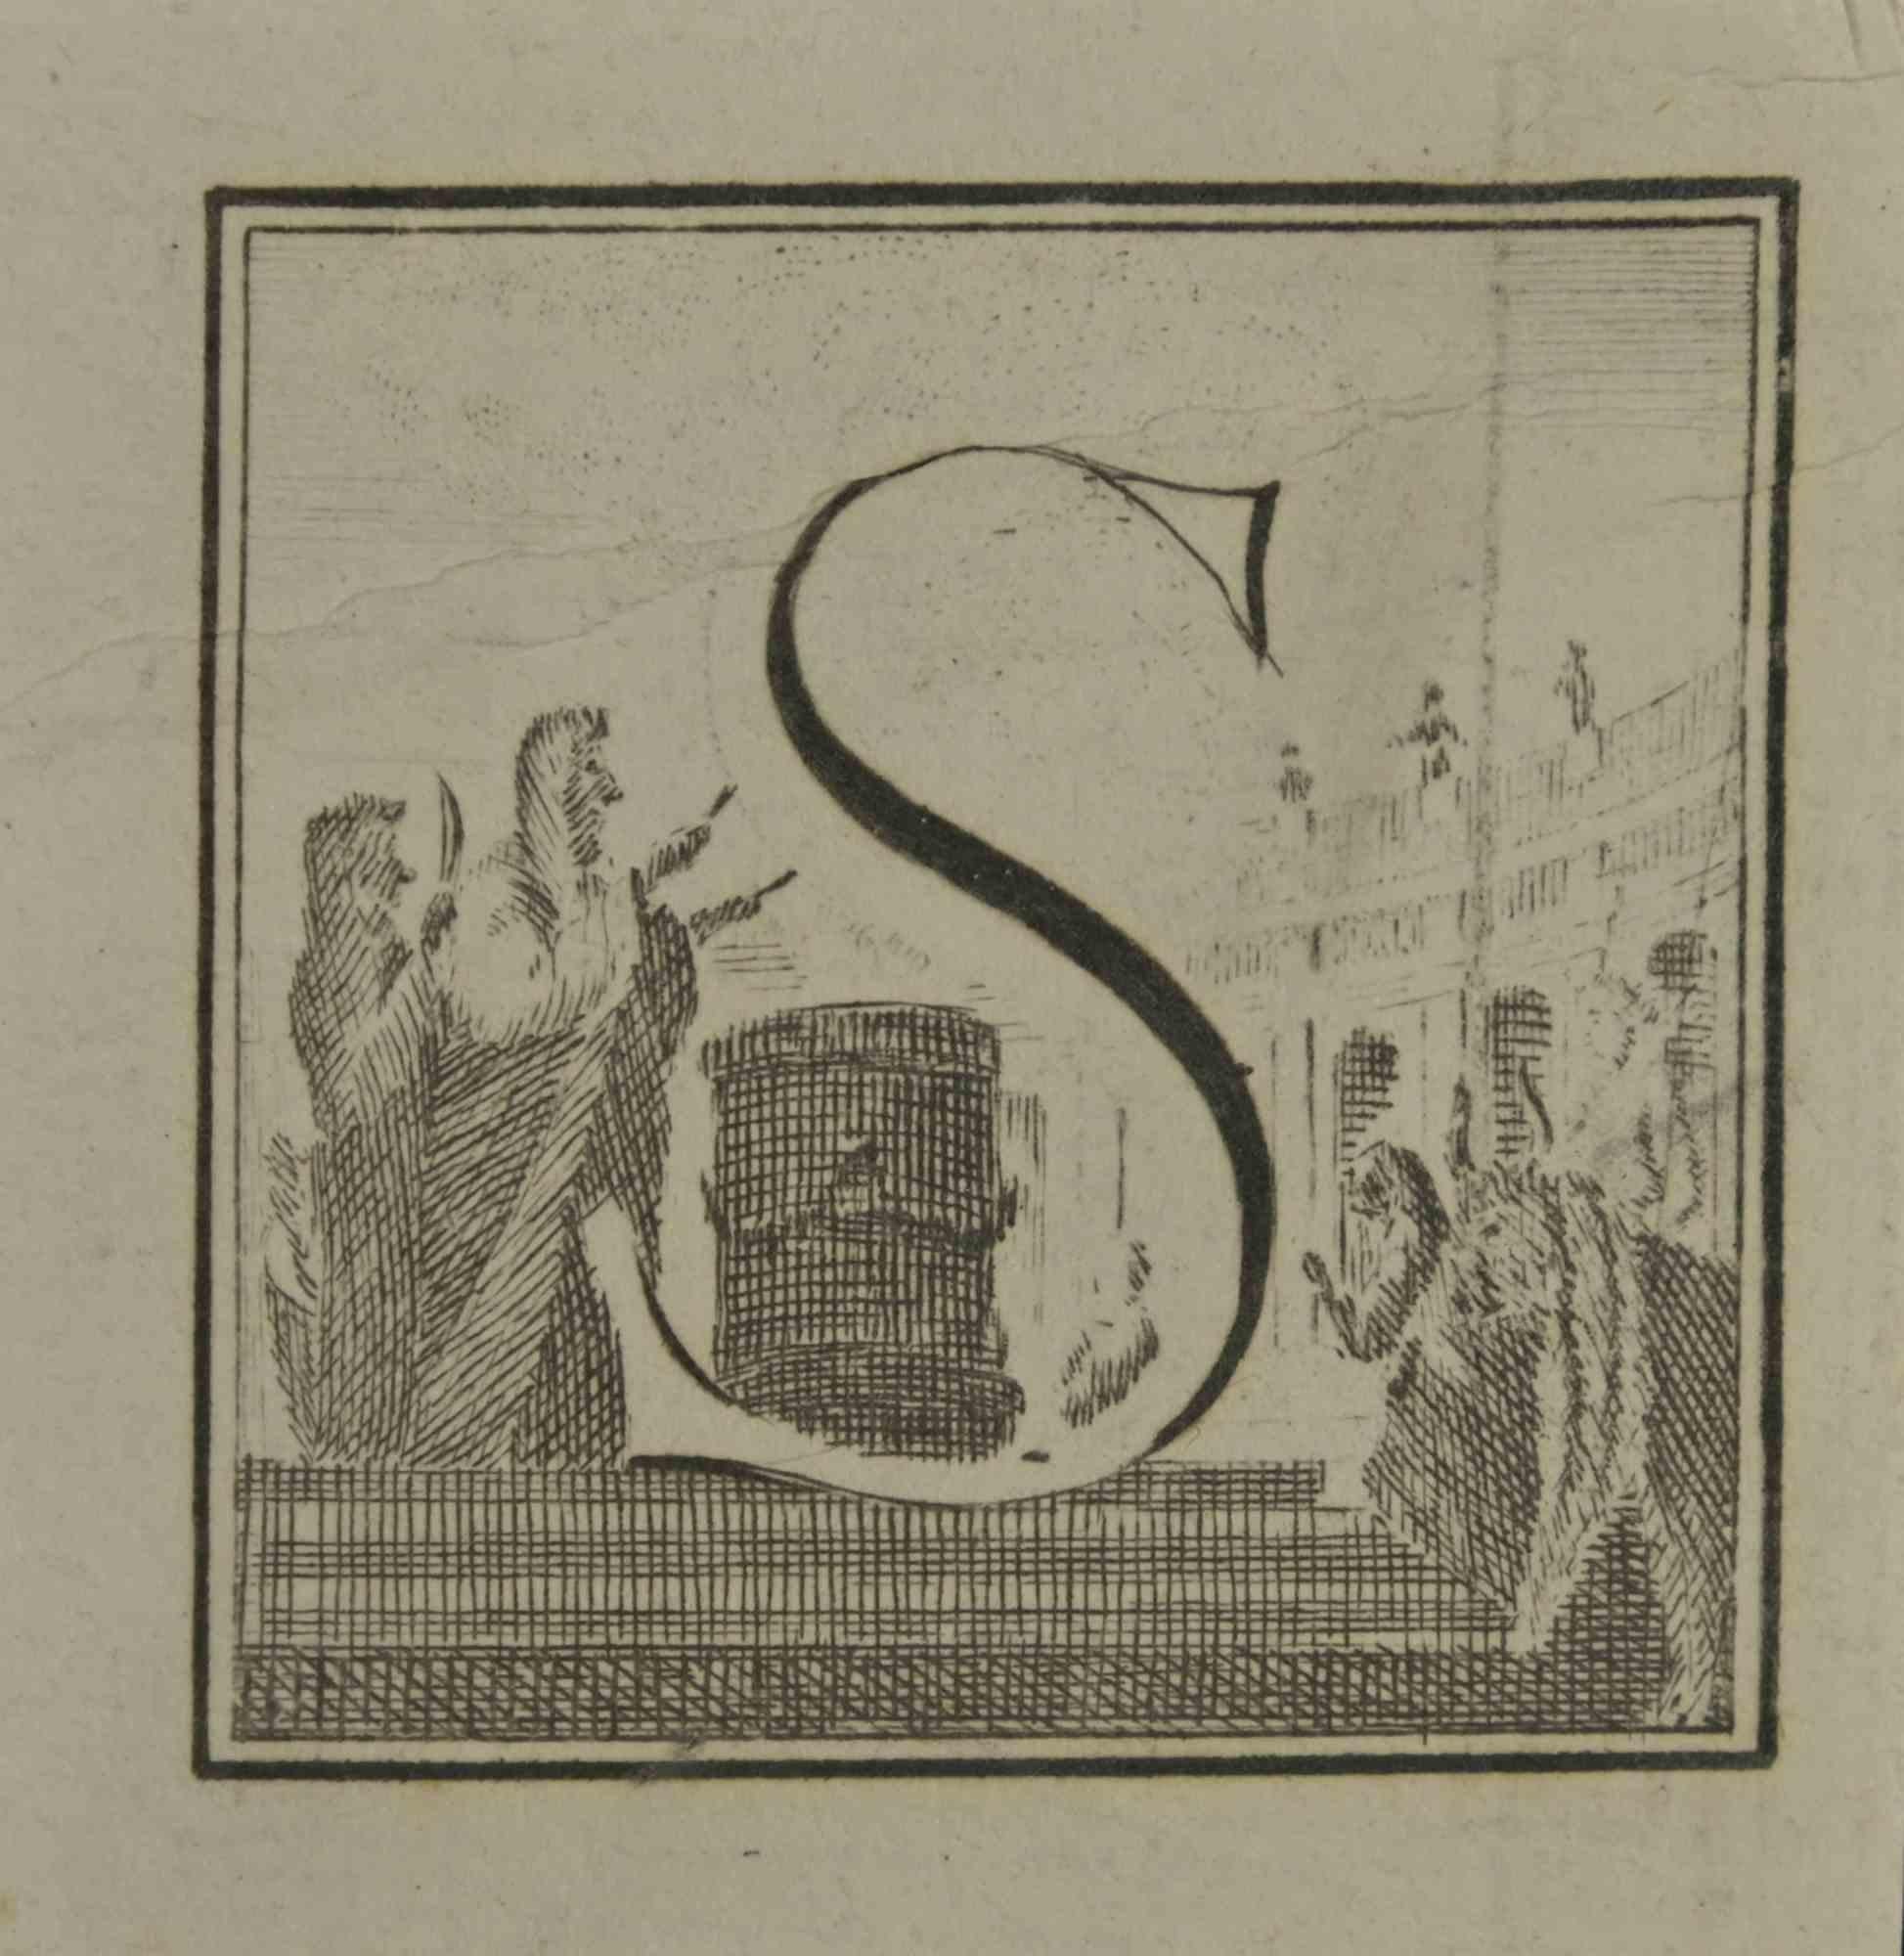 La lettre S est une gravure réalisée par Luigi Vanvitelli, artiste du XVIIIe siècle.

La gravure appartient à la suite d'estampes "Antiquités d'Herculanum exposées" (titre original : "Le Antichità di Ercolano Esposte"), un volume de huit gravures